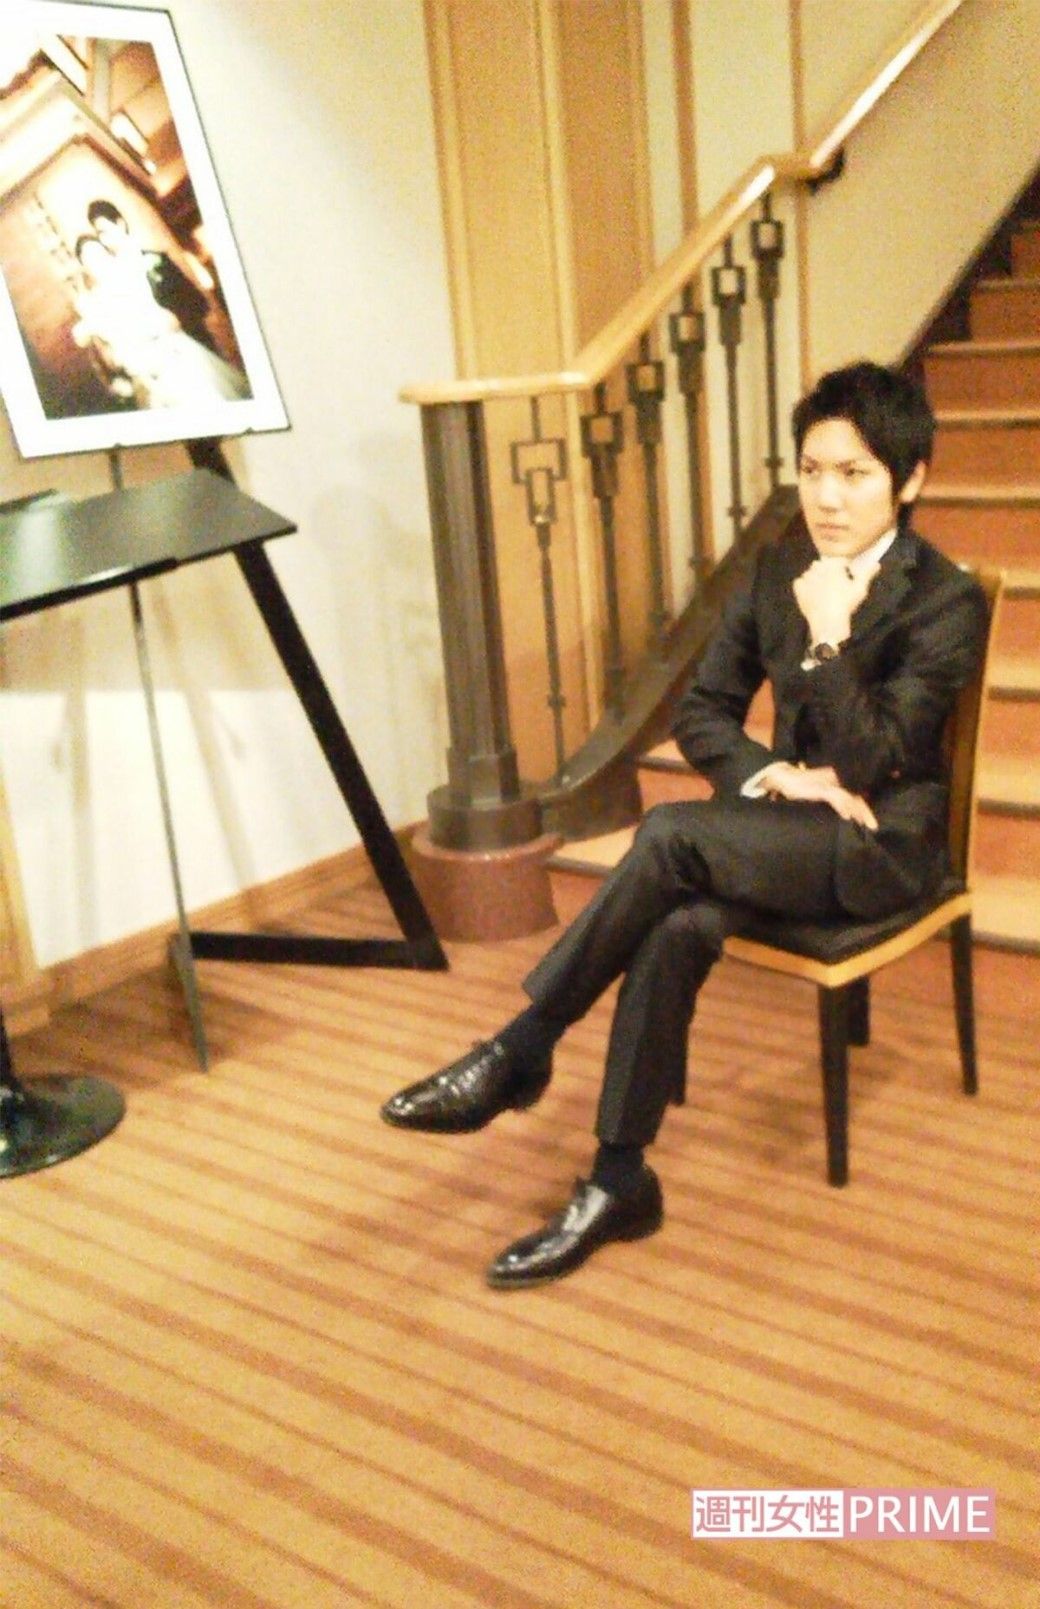 小室圭さん、帝国ホテルにて成人した際の記念撮影で決めポーズ